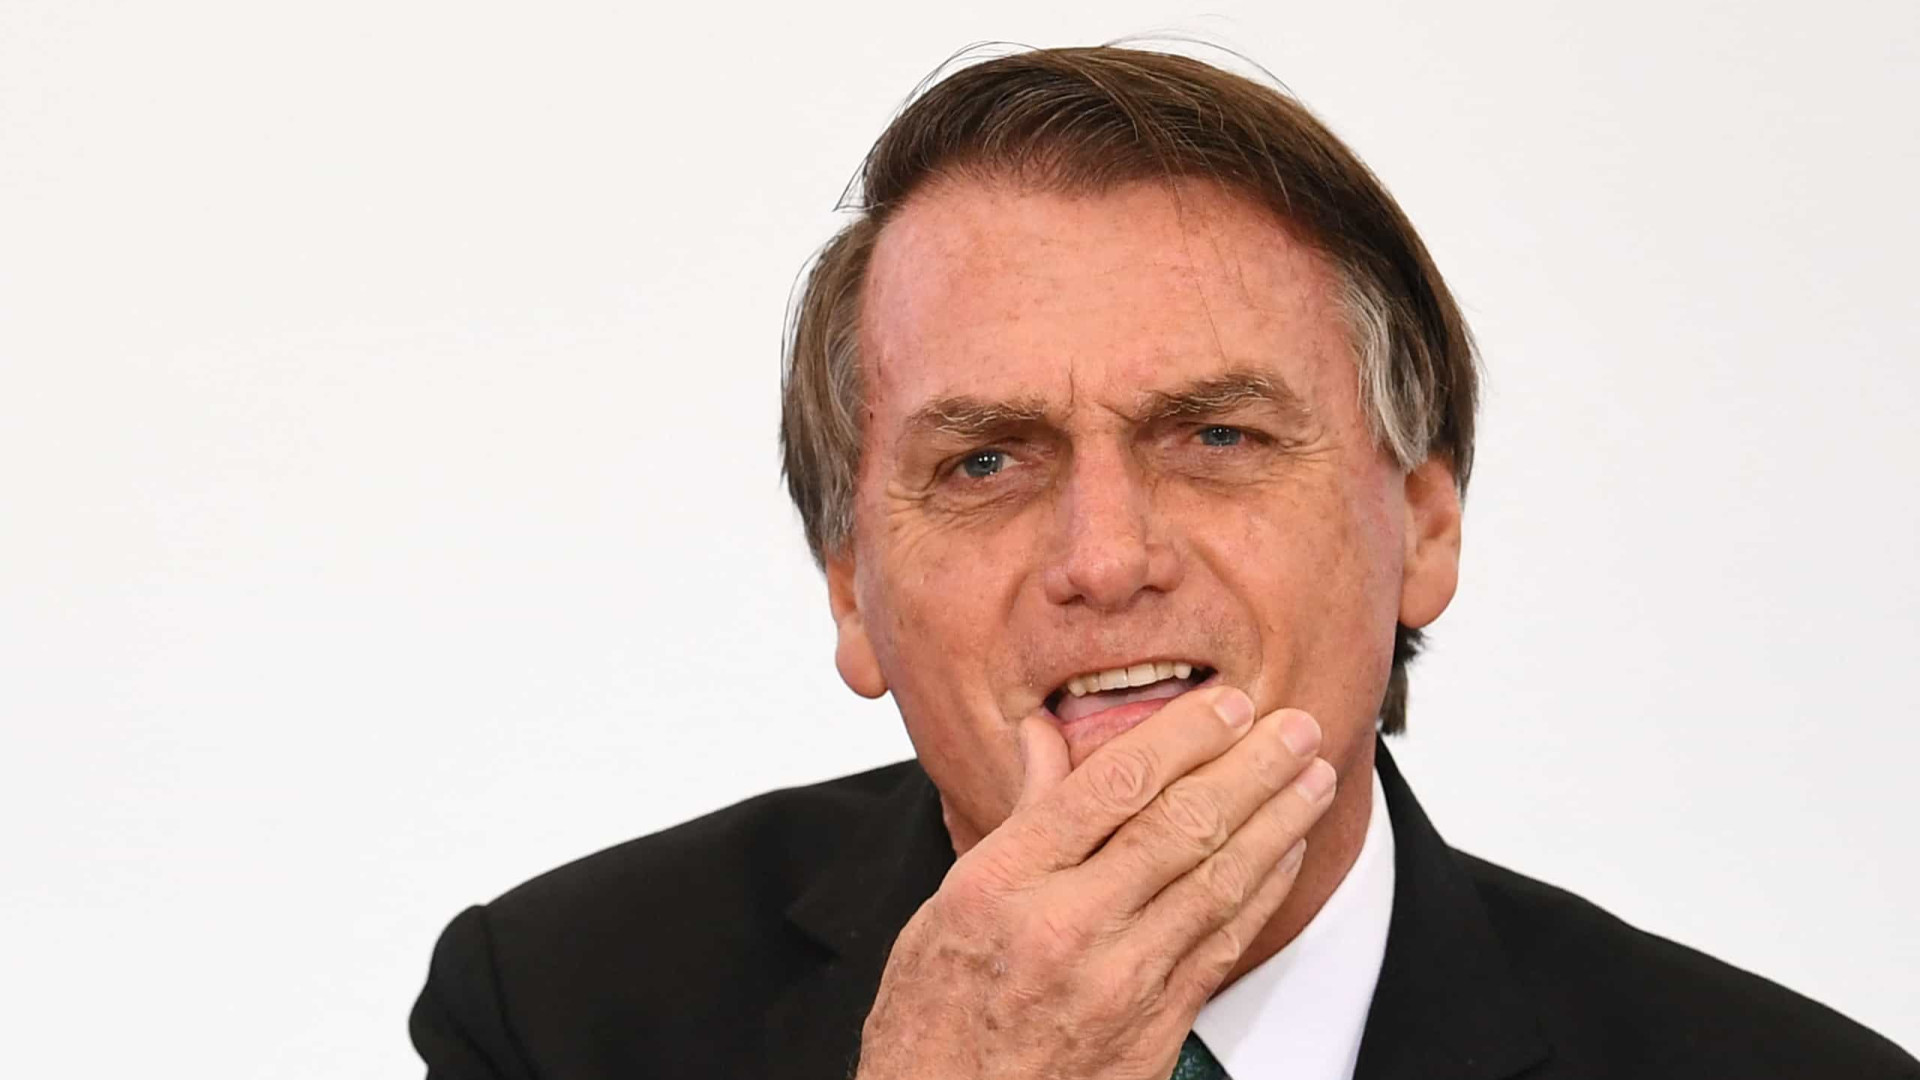 Moraes é líder da esquerda e inferniza o Brasil com Fachin e Barroso, diz Bolsonaro